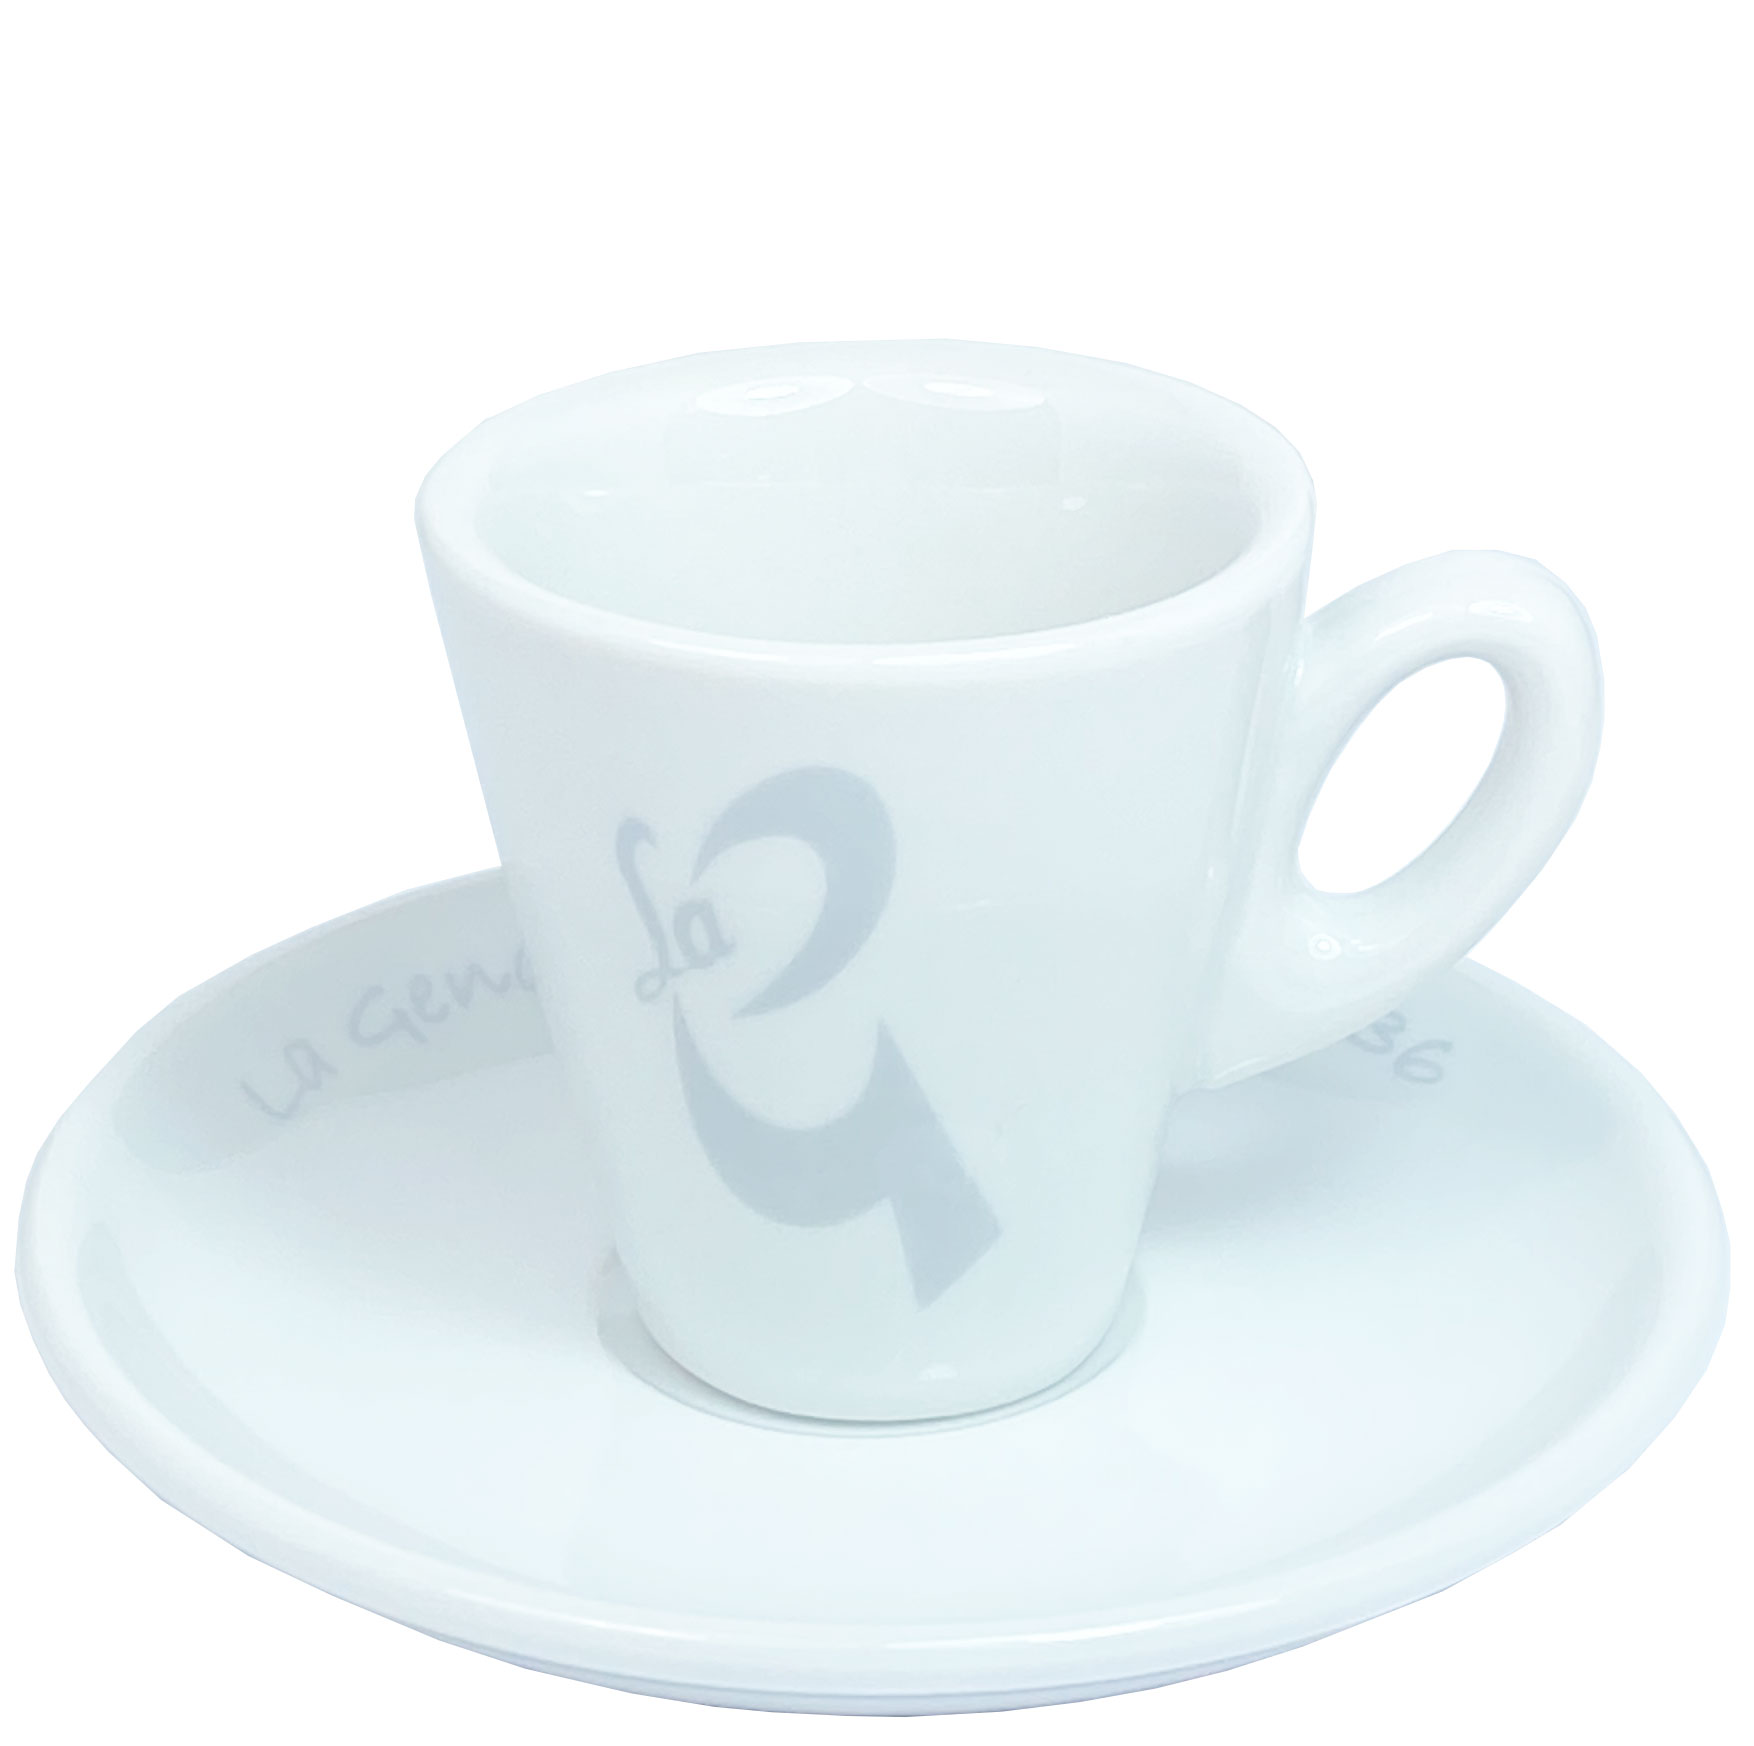 | Espresso cup "La G" Buy here !